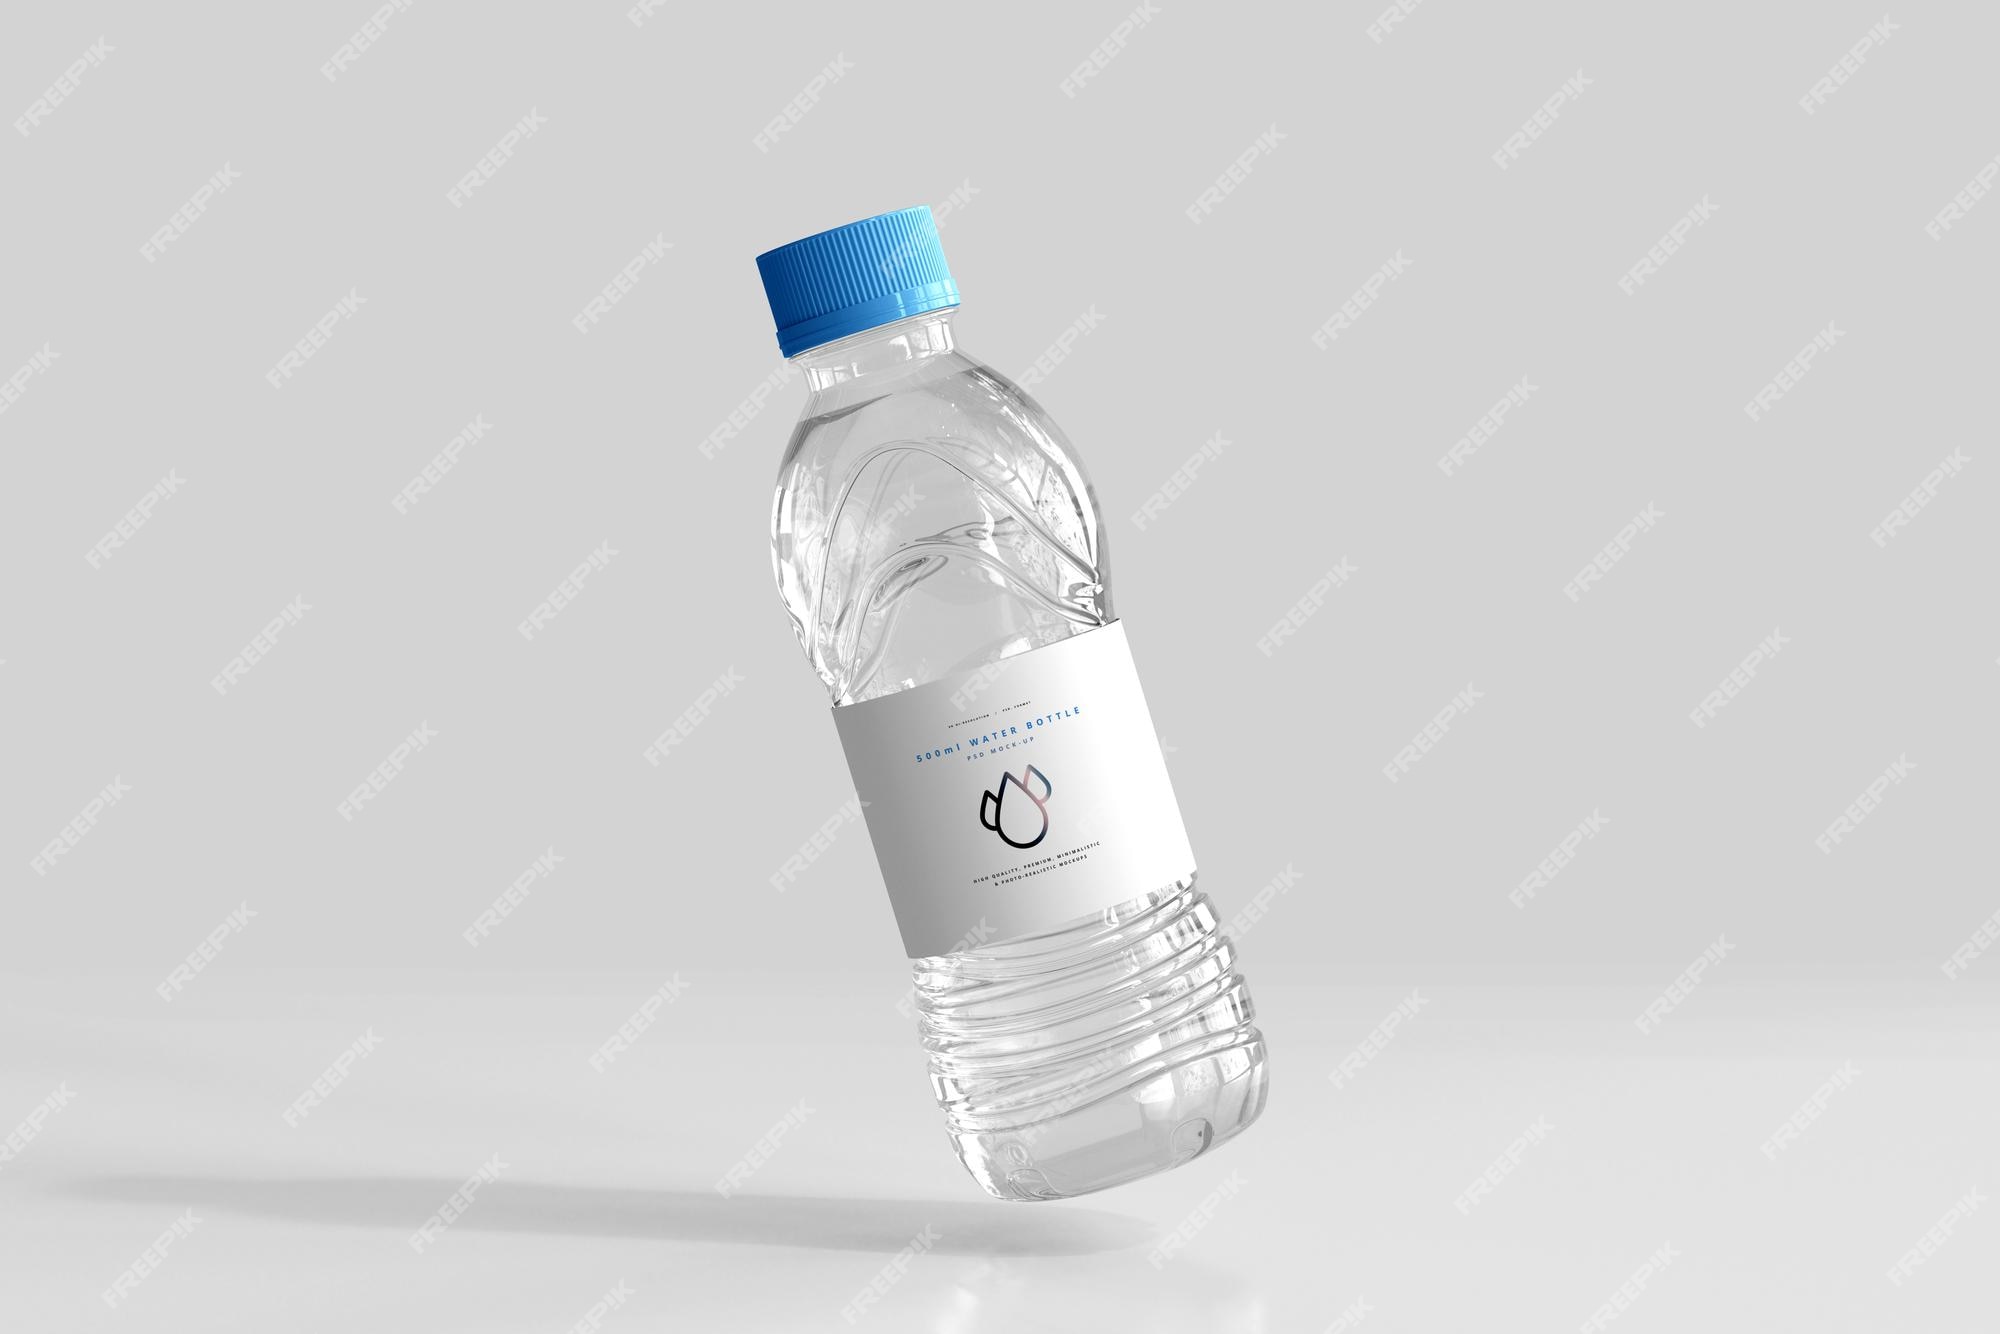 ماکت بطری آب شیرین 500 میلی لیتری- دانلود رایگان -لوگو